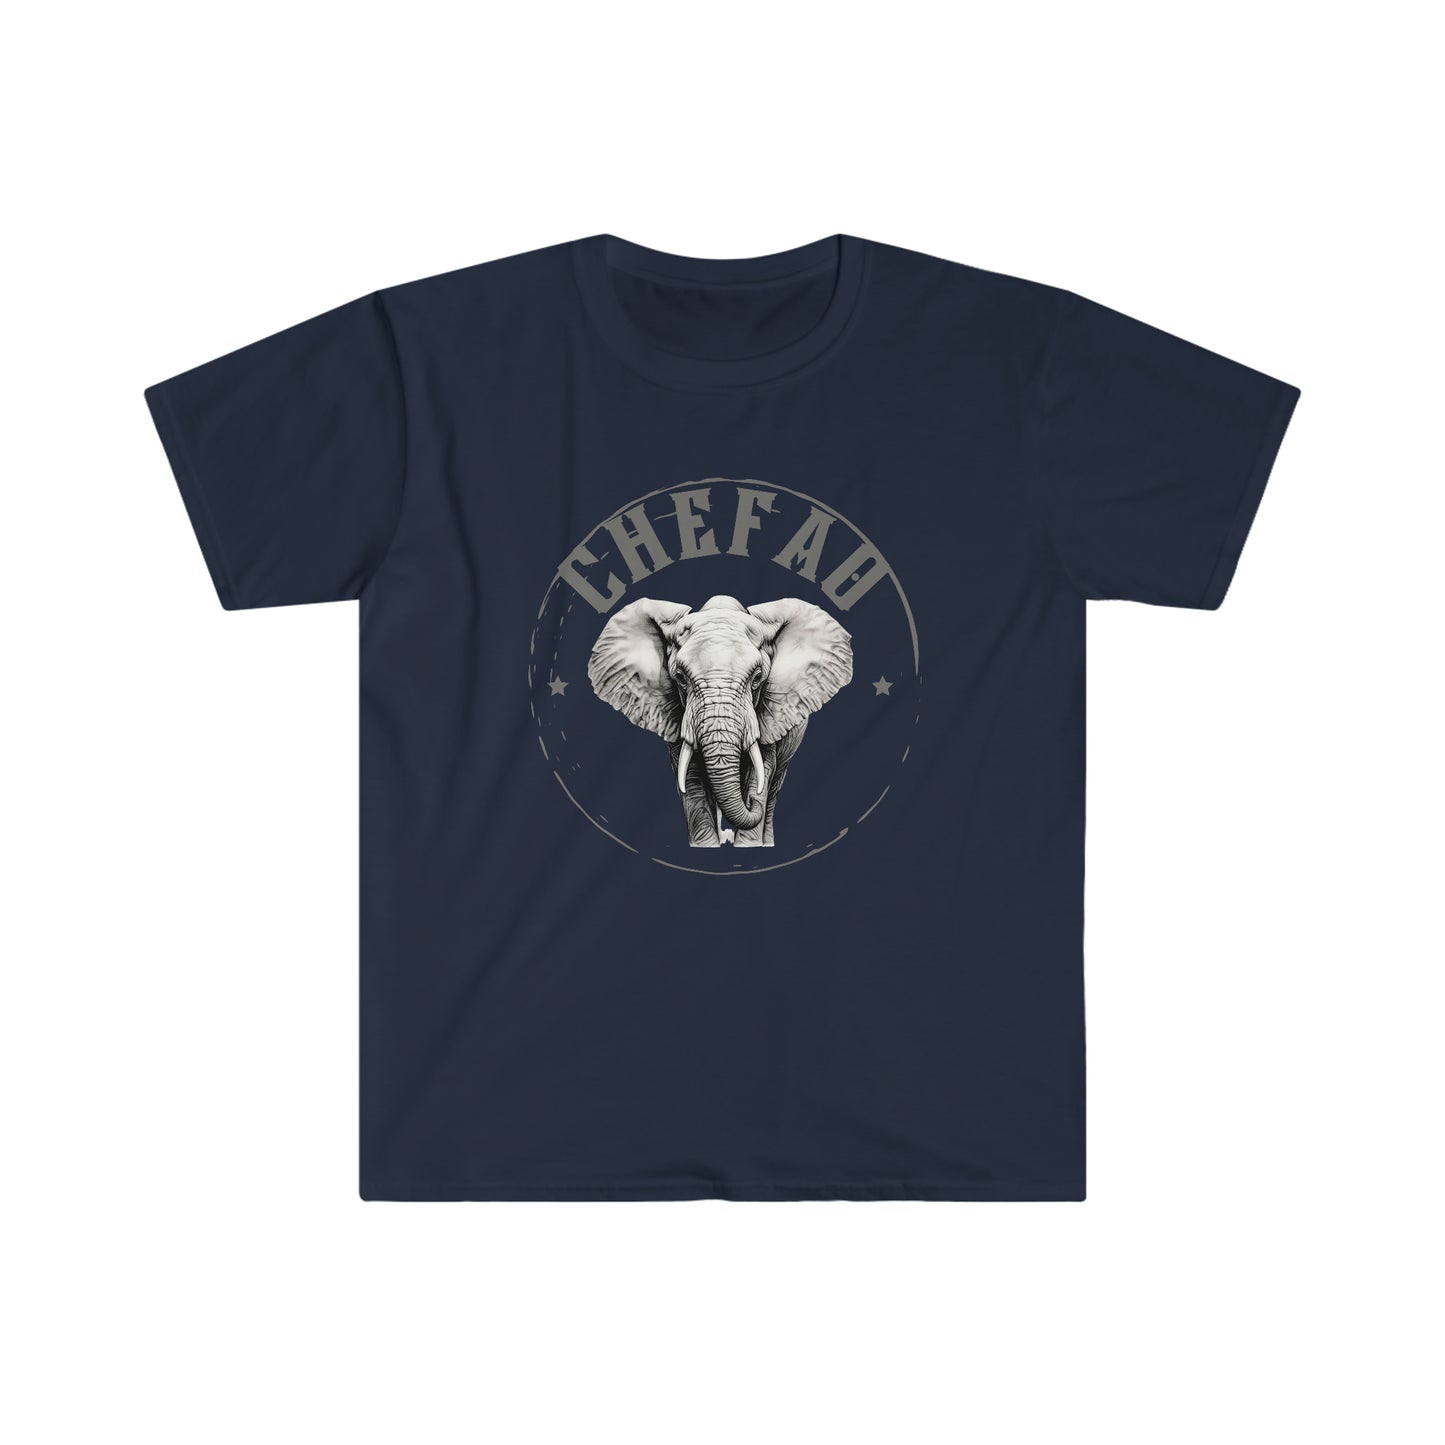 Chefao Elephant I, Unisex Softstyle T-Shirt